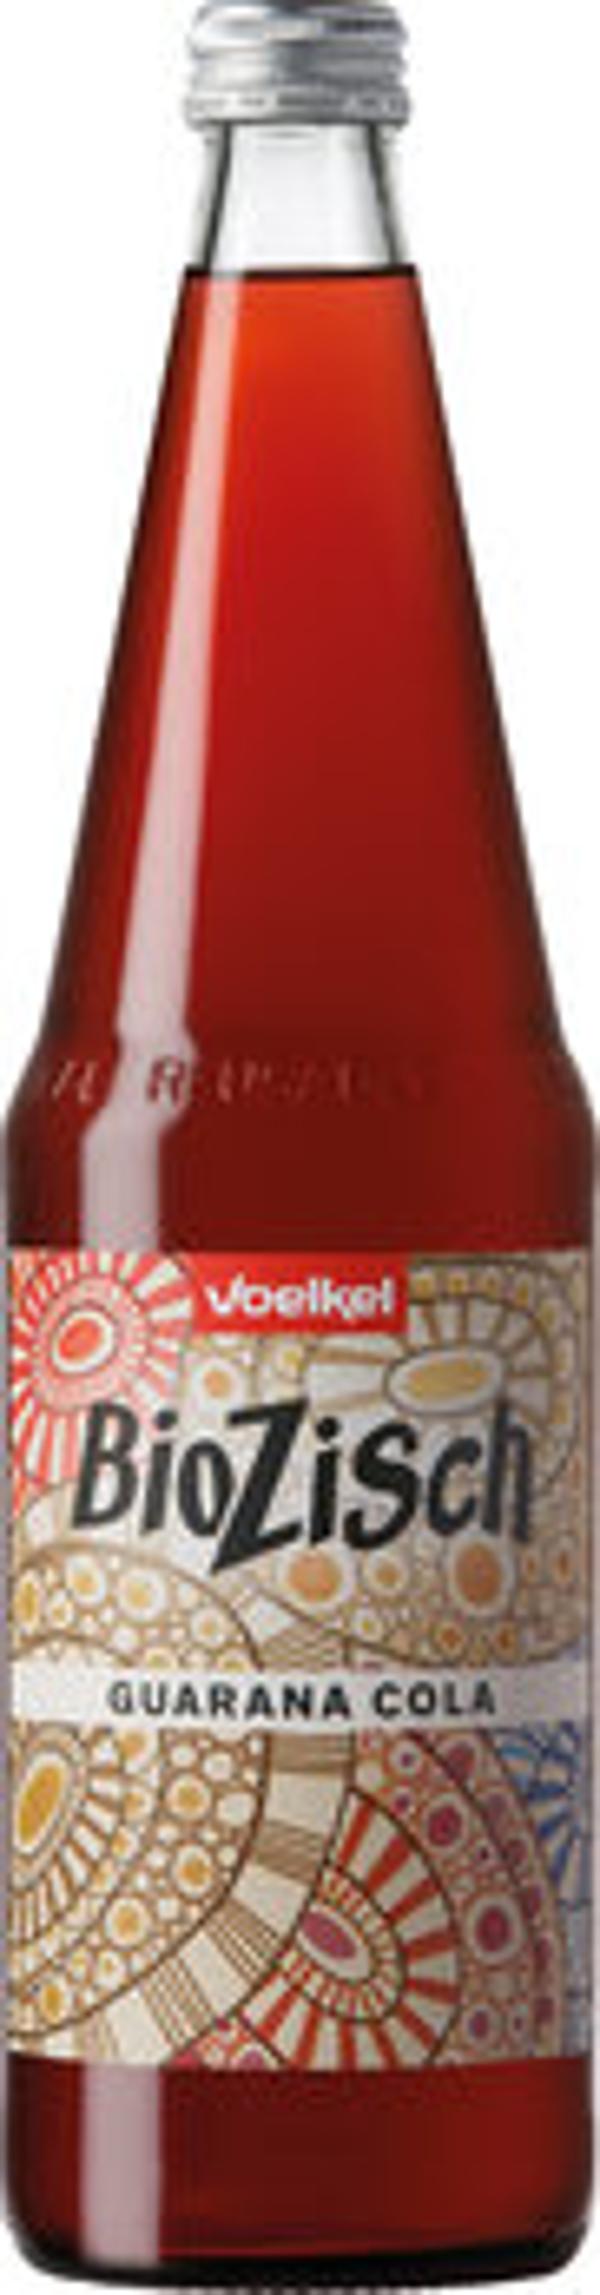 Produktfoto zu BioZisch Guarana Cola, 0,7l